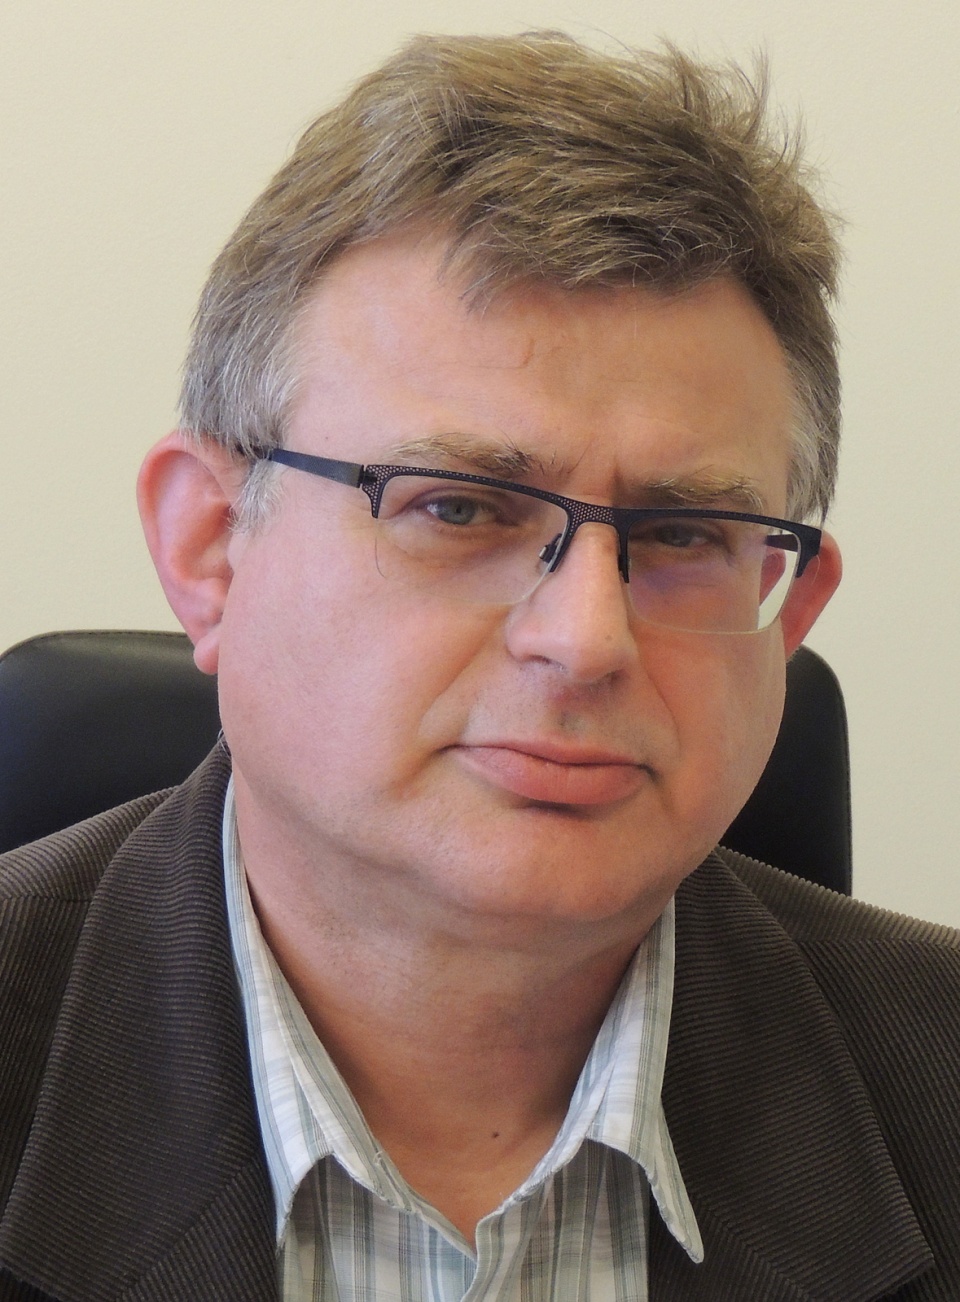 Sędzia Wojciech Szpyrkowicz. Fot. Marek Ledwosiński